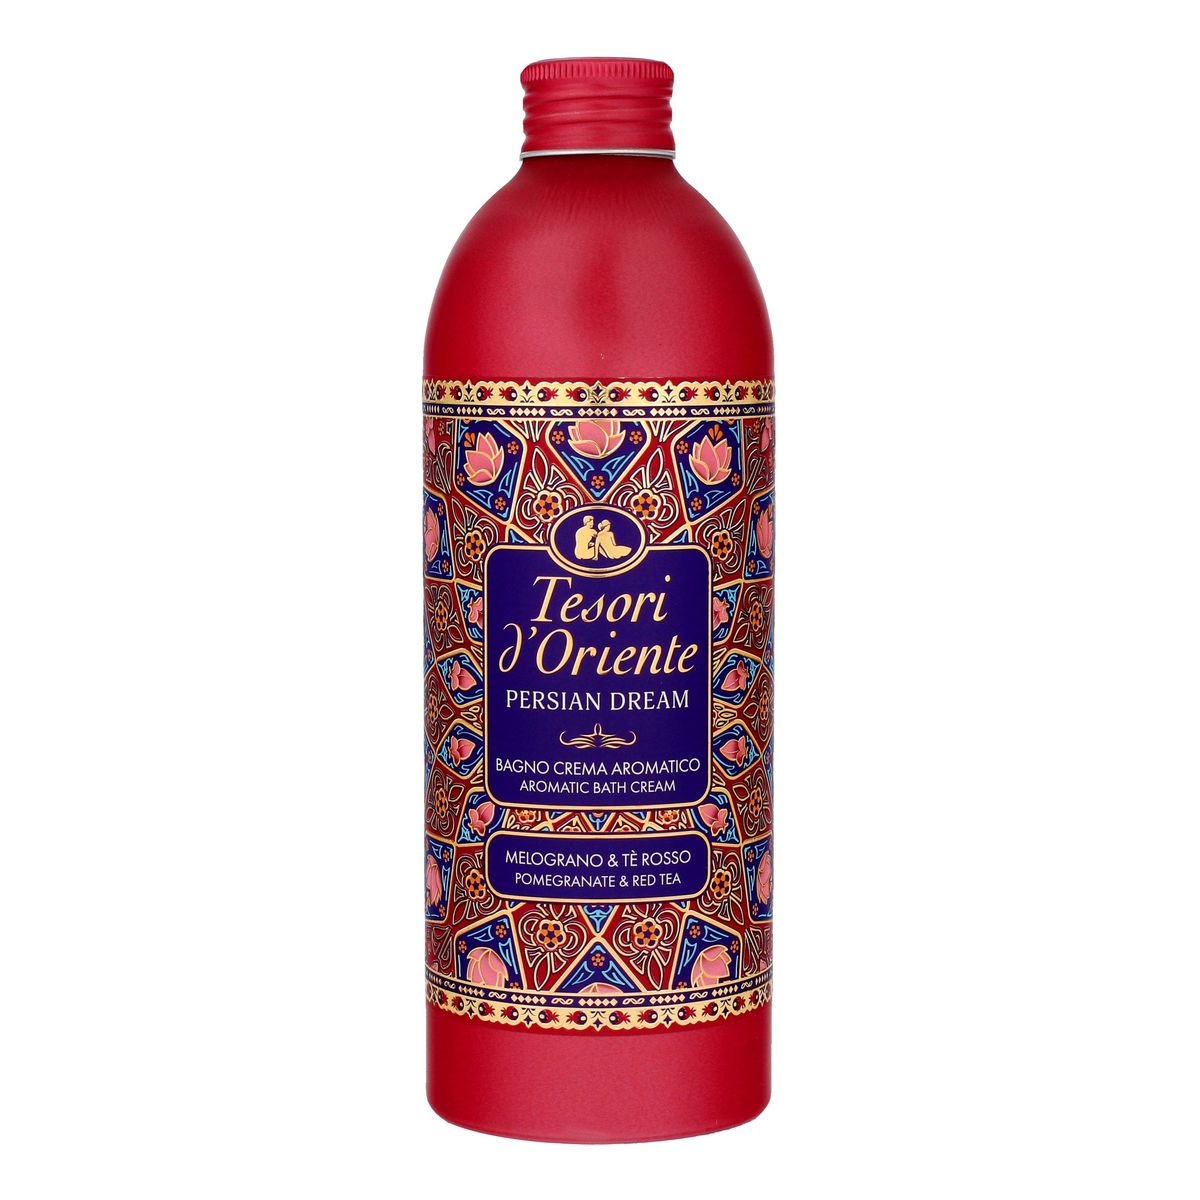 Tesori d'Oriente Persian Dream Kremowy płyn do kąpieli - Pomegranate & Red Tea 500ml